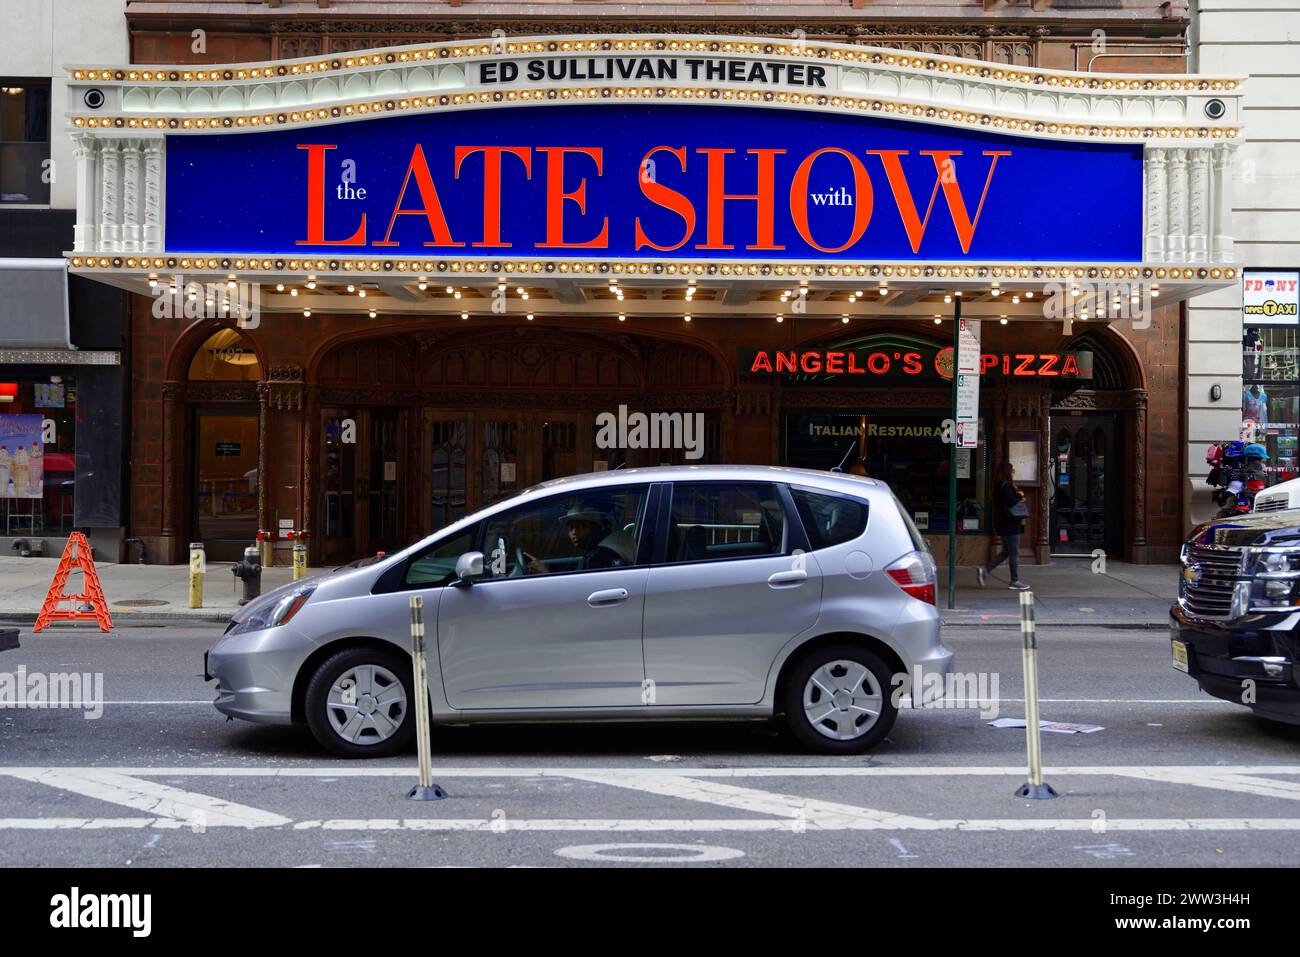 Die beleuchtete Außenfassade des Ed Sullivan Theatre mit dem Late Show Schild, Manhattan, New York City, New York, USA, Nordamerika Stockfoto